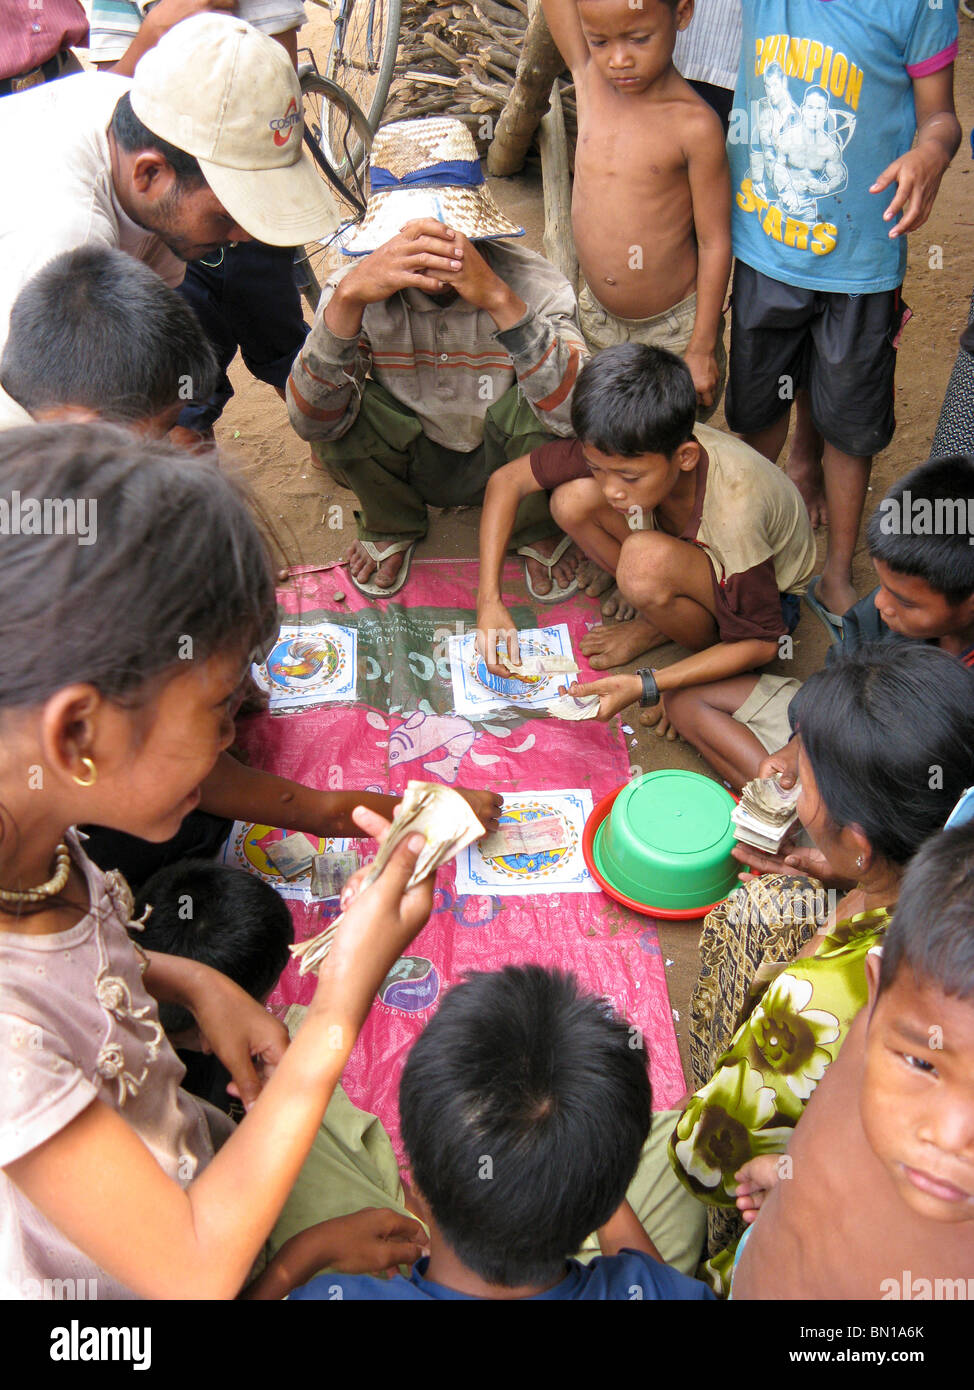 Gli abitanti di un villaggio di gioco d'azzardo al gioco, Kompong Phluk village, Lago Tonle Sap, Cambogia Foto Stock